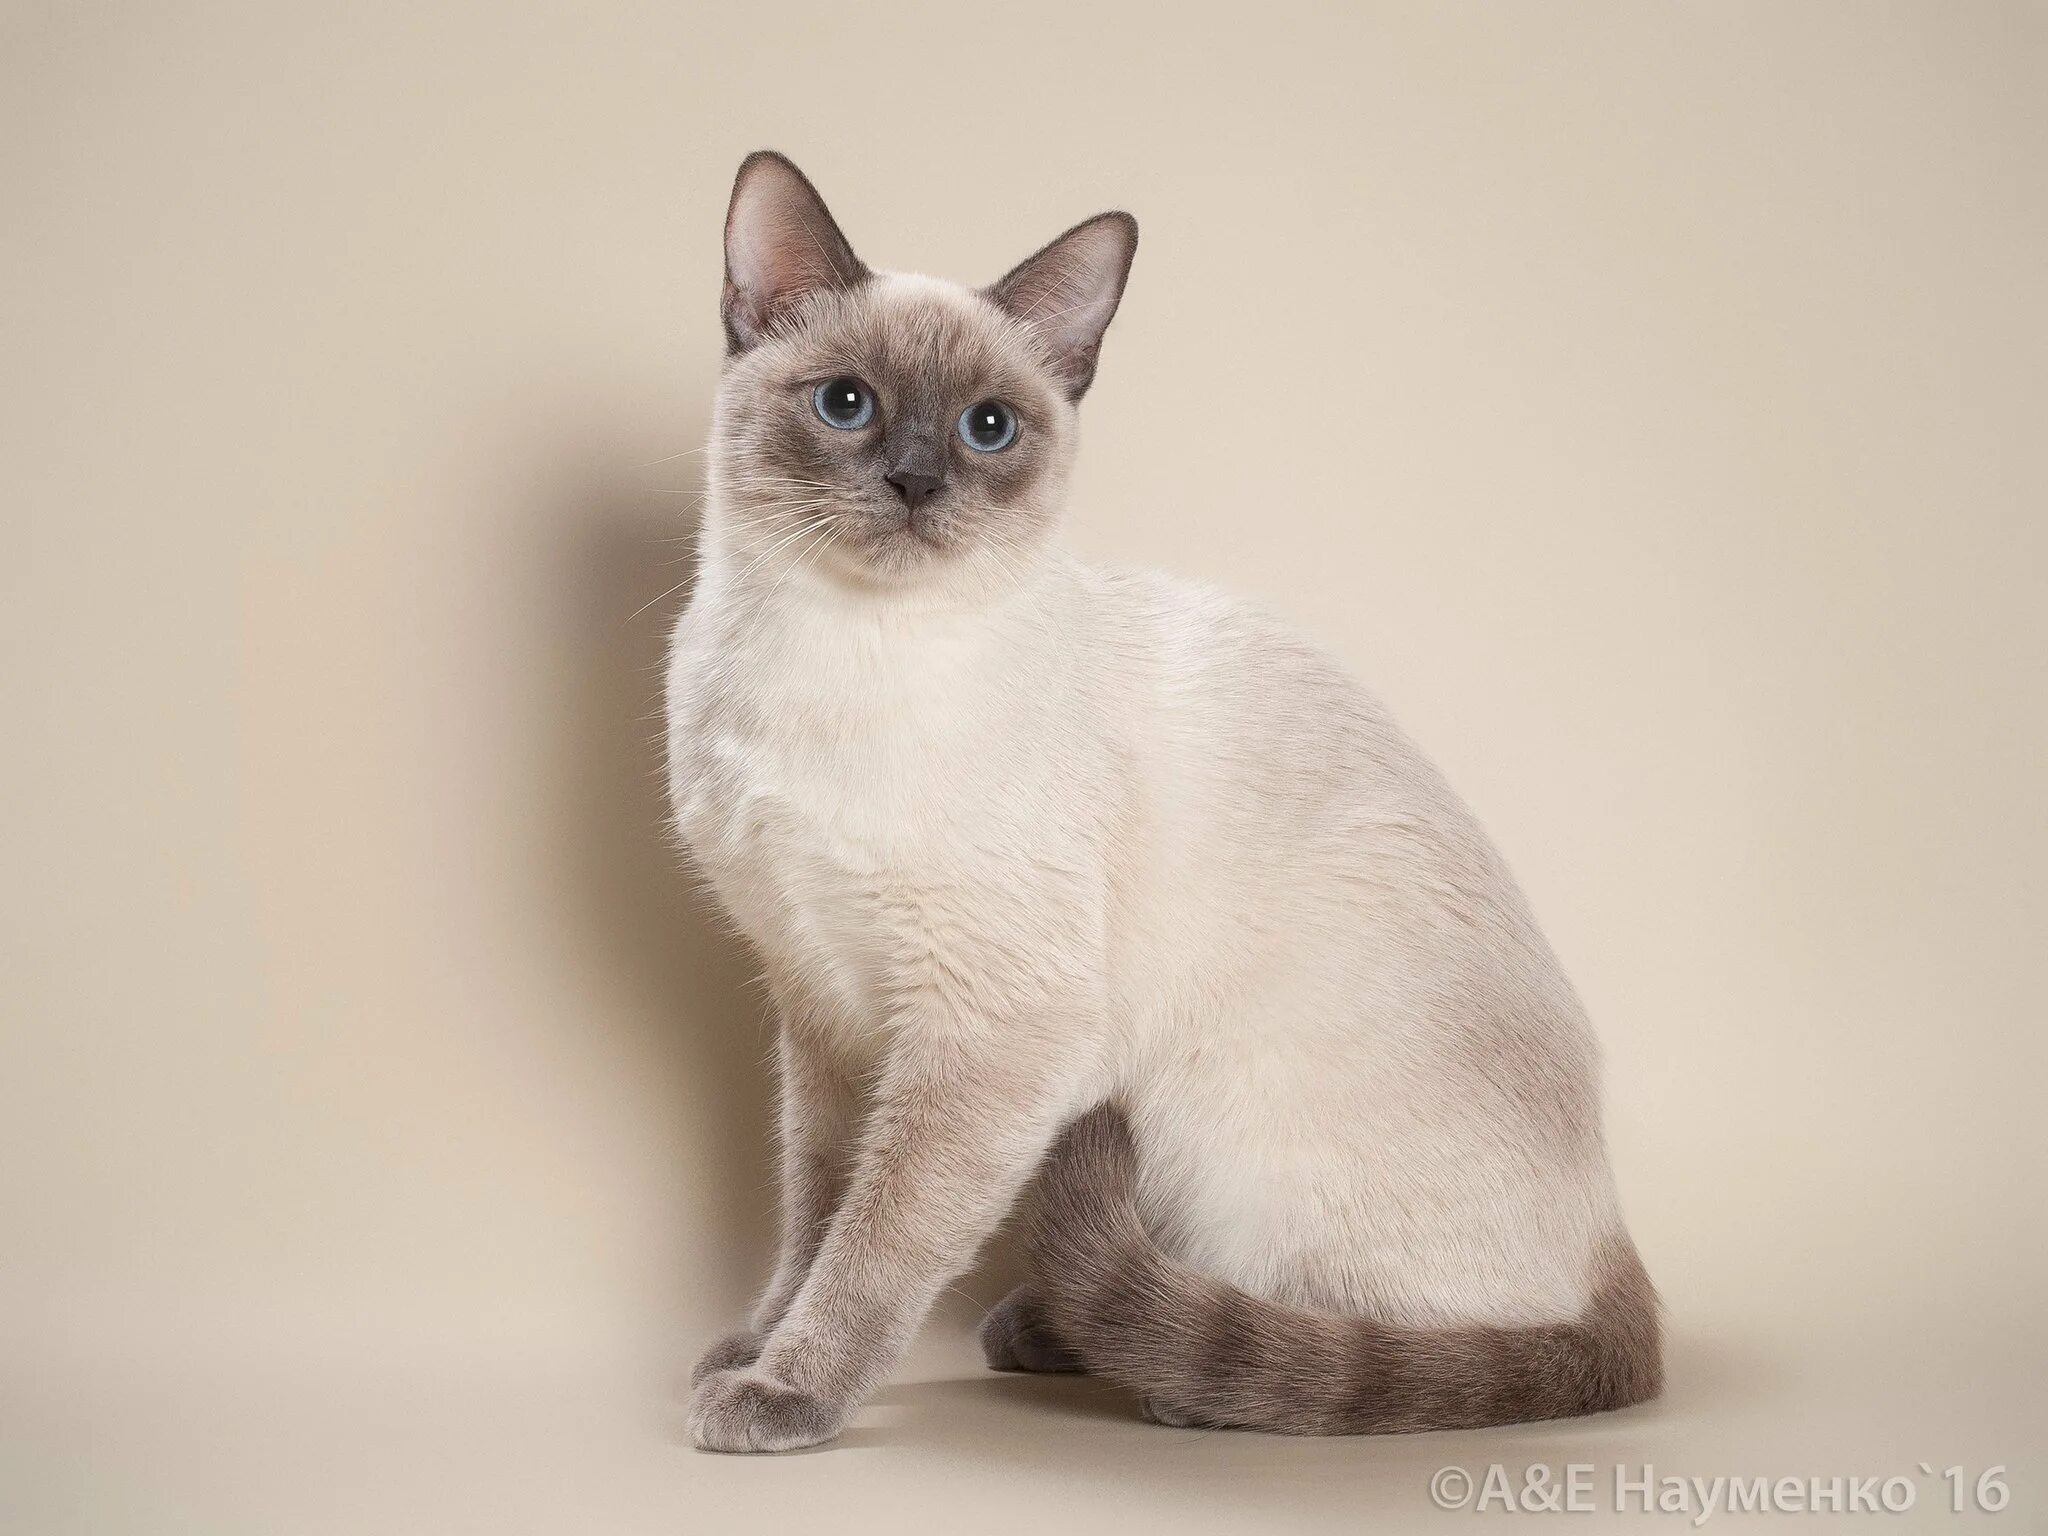 Тайская кошка старотипная. Тайская кошка фавн Пойнт. Сиамская кошка Блю-Пойнт. Сиамская кошка сил-Пойнт.